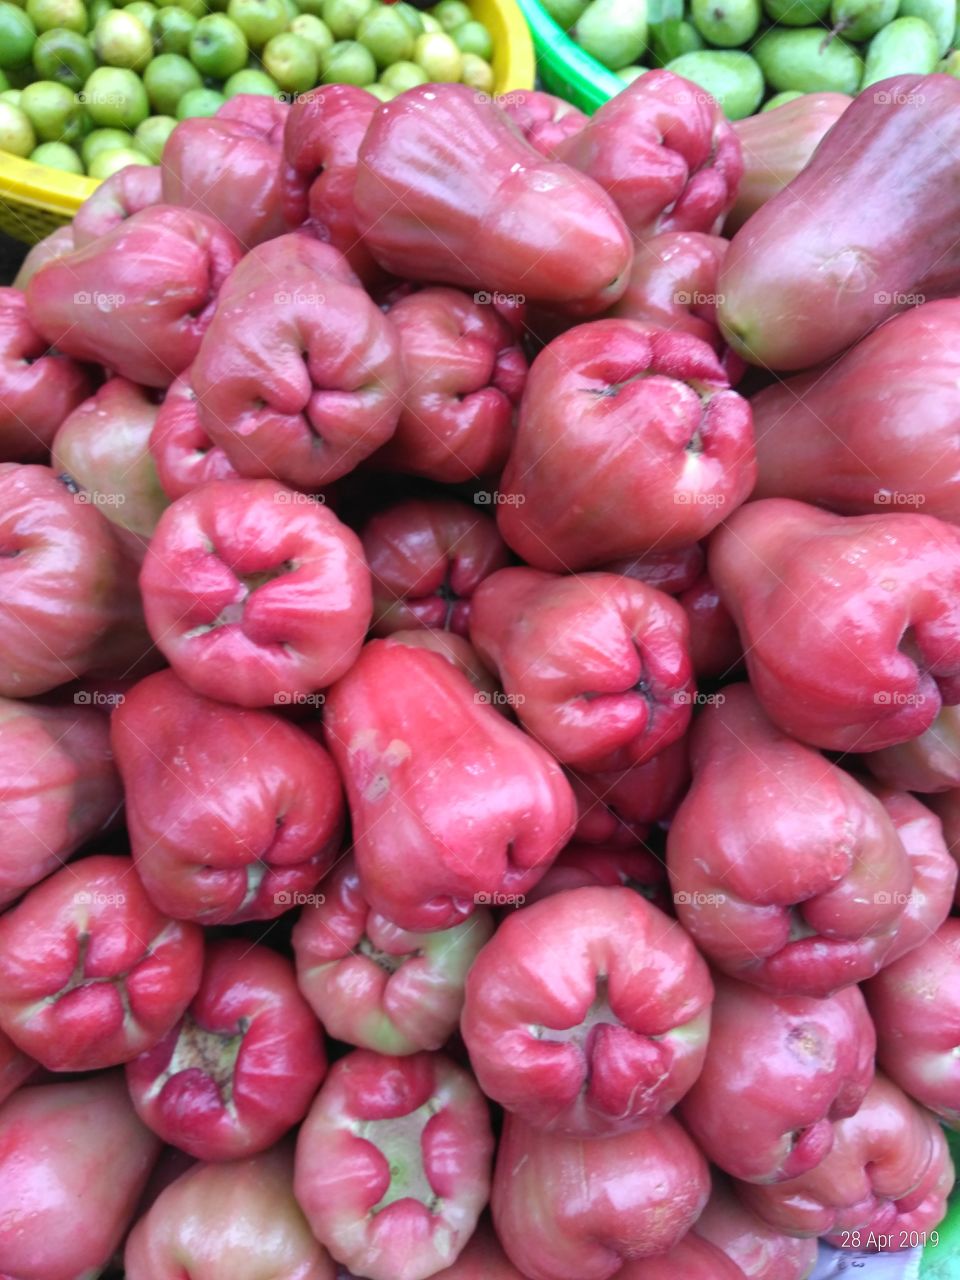 Pink fruit. "Jambu Air" or Rose Apple
#craftyartificer
#fruits